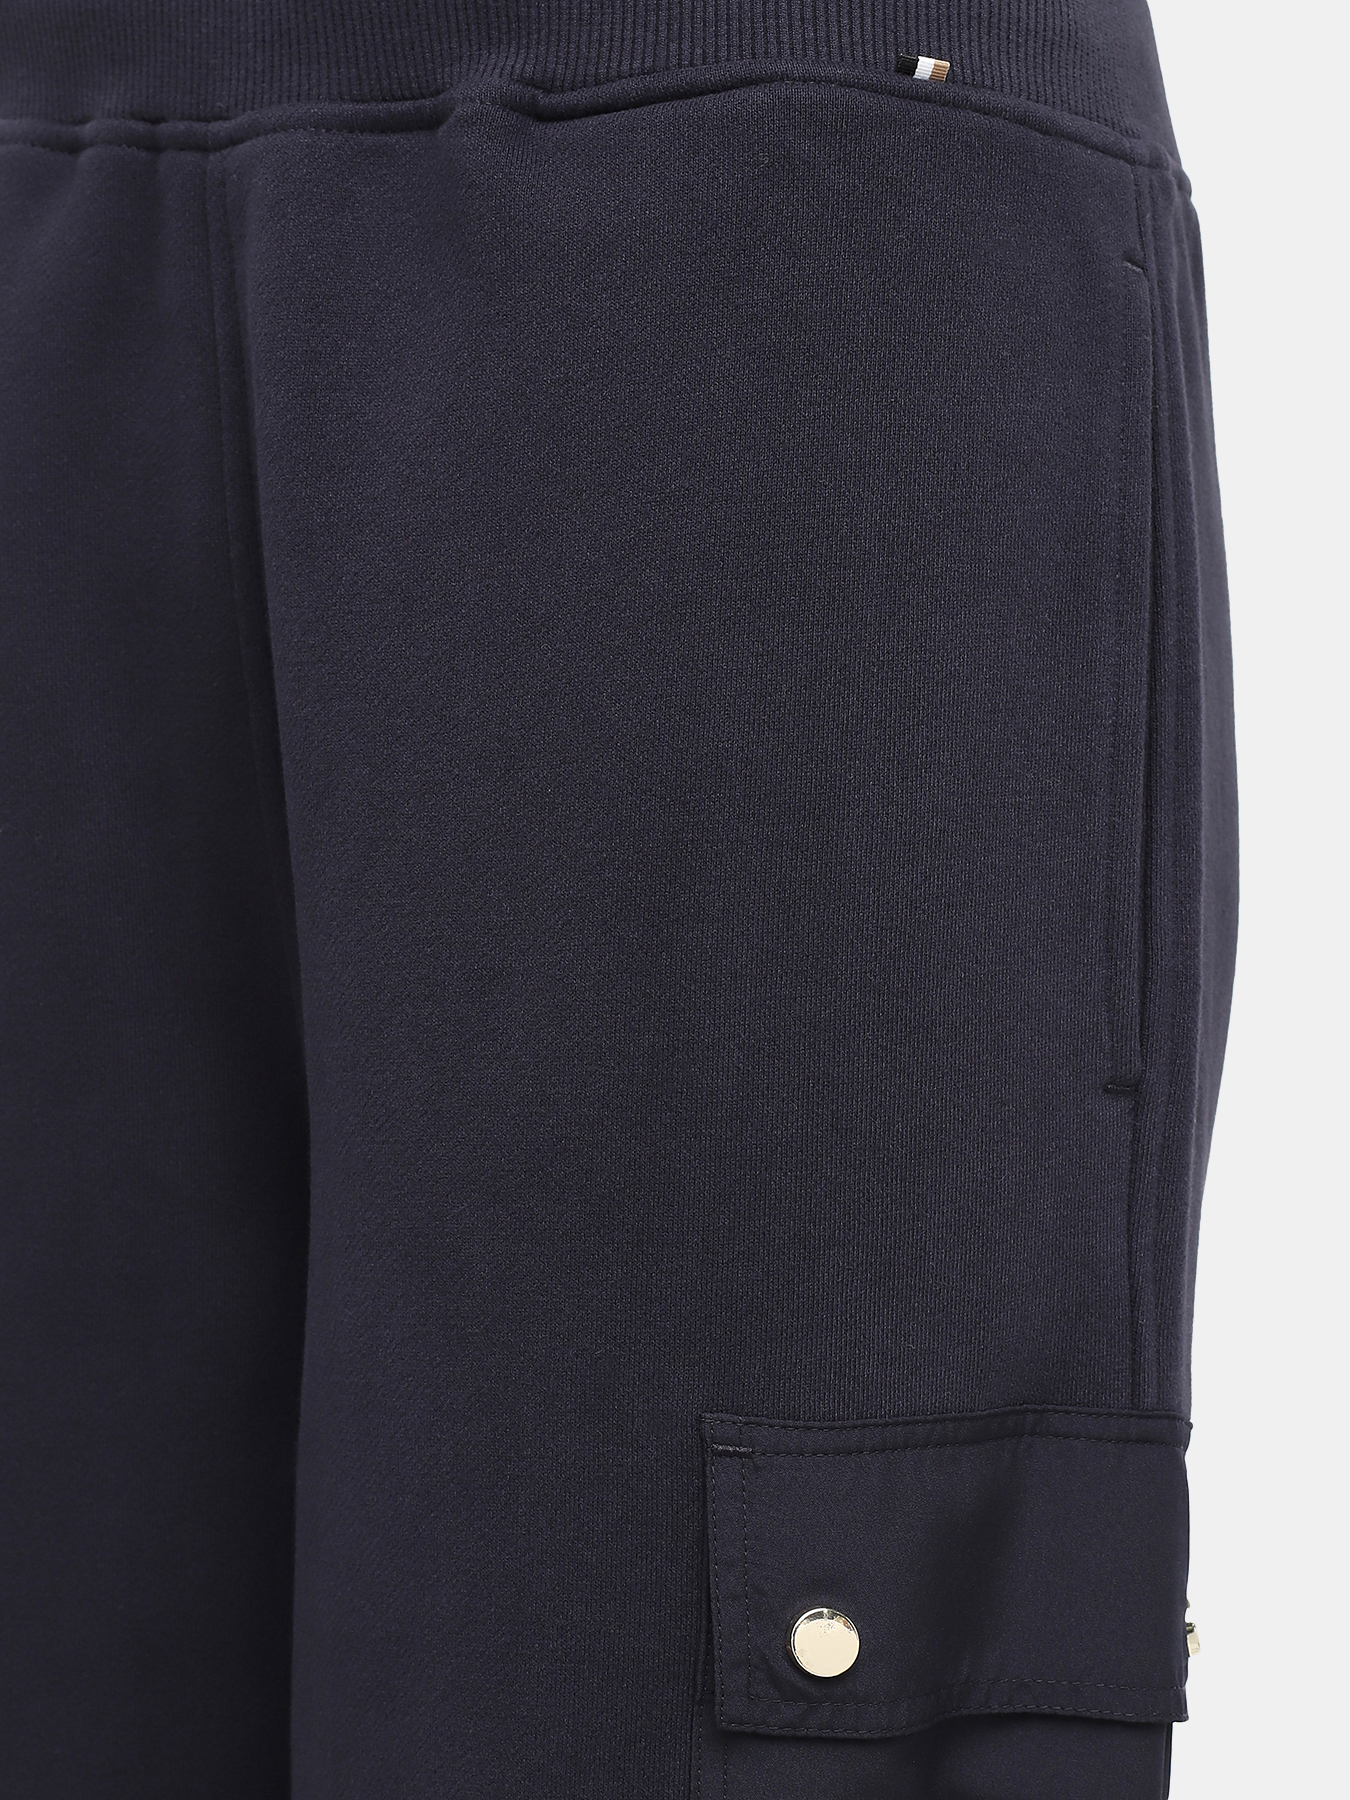 Спортивные брюки Ecargo BOSS 426677-041, цвет темно-синий, размер 40-42 - фото 3